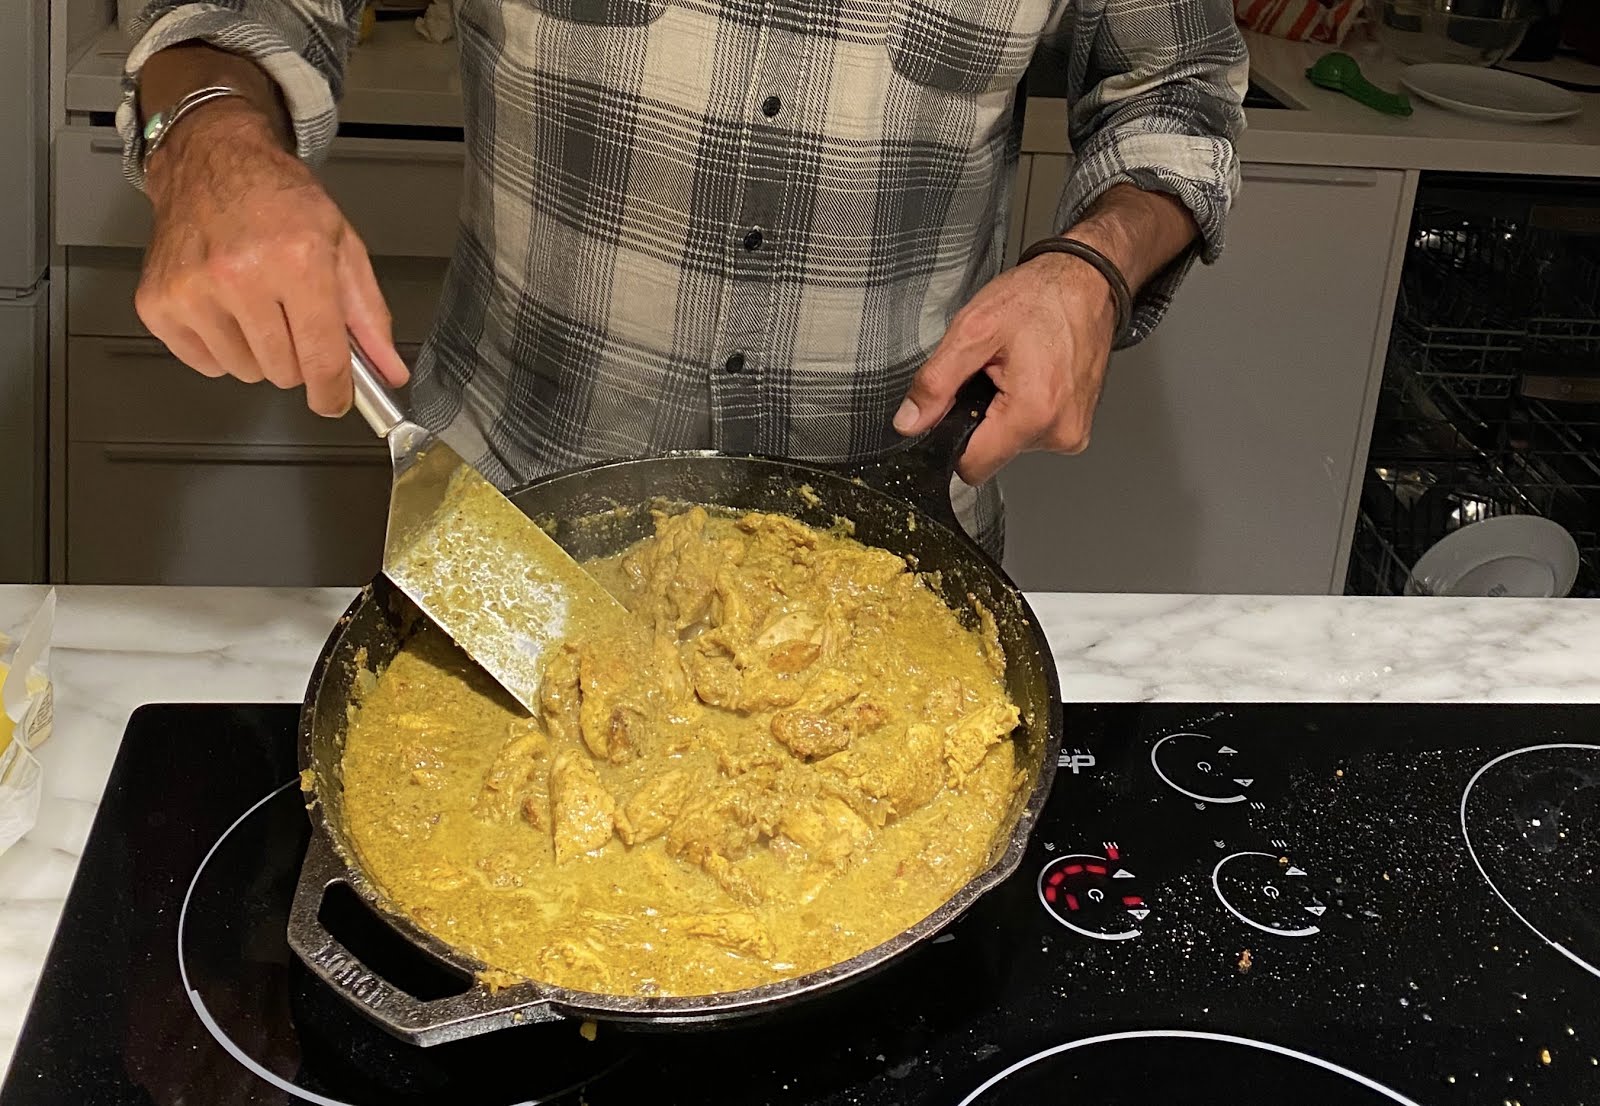 Mom's legendary chicken curry underway.